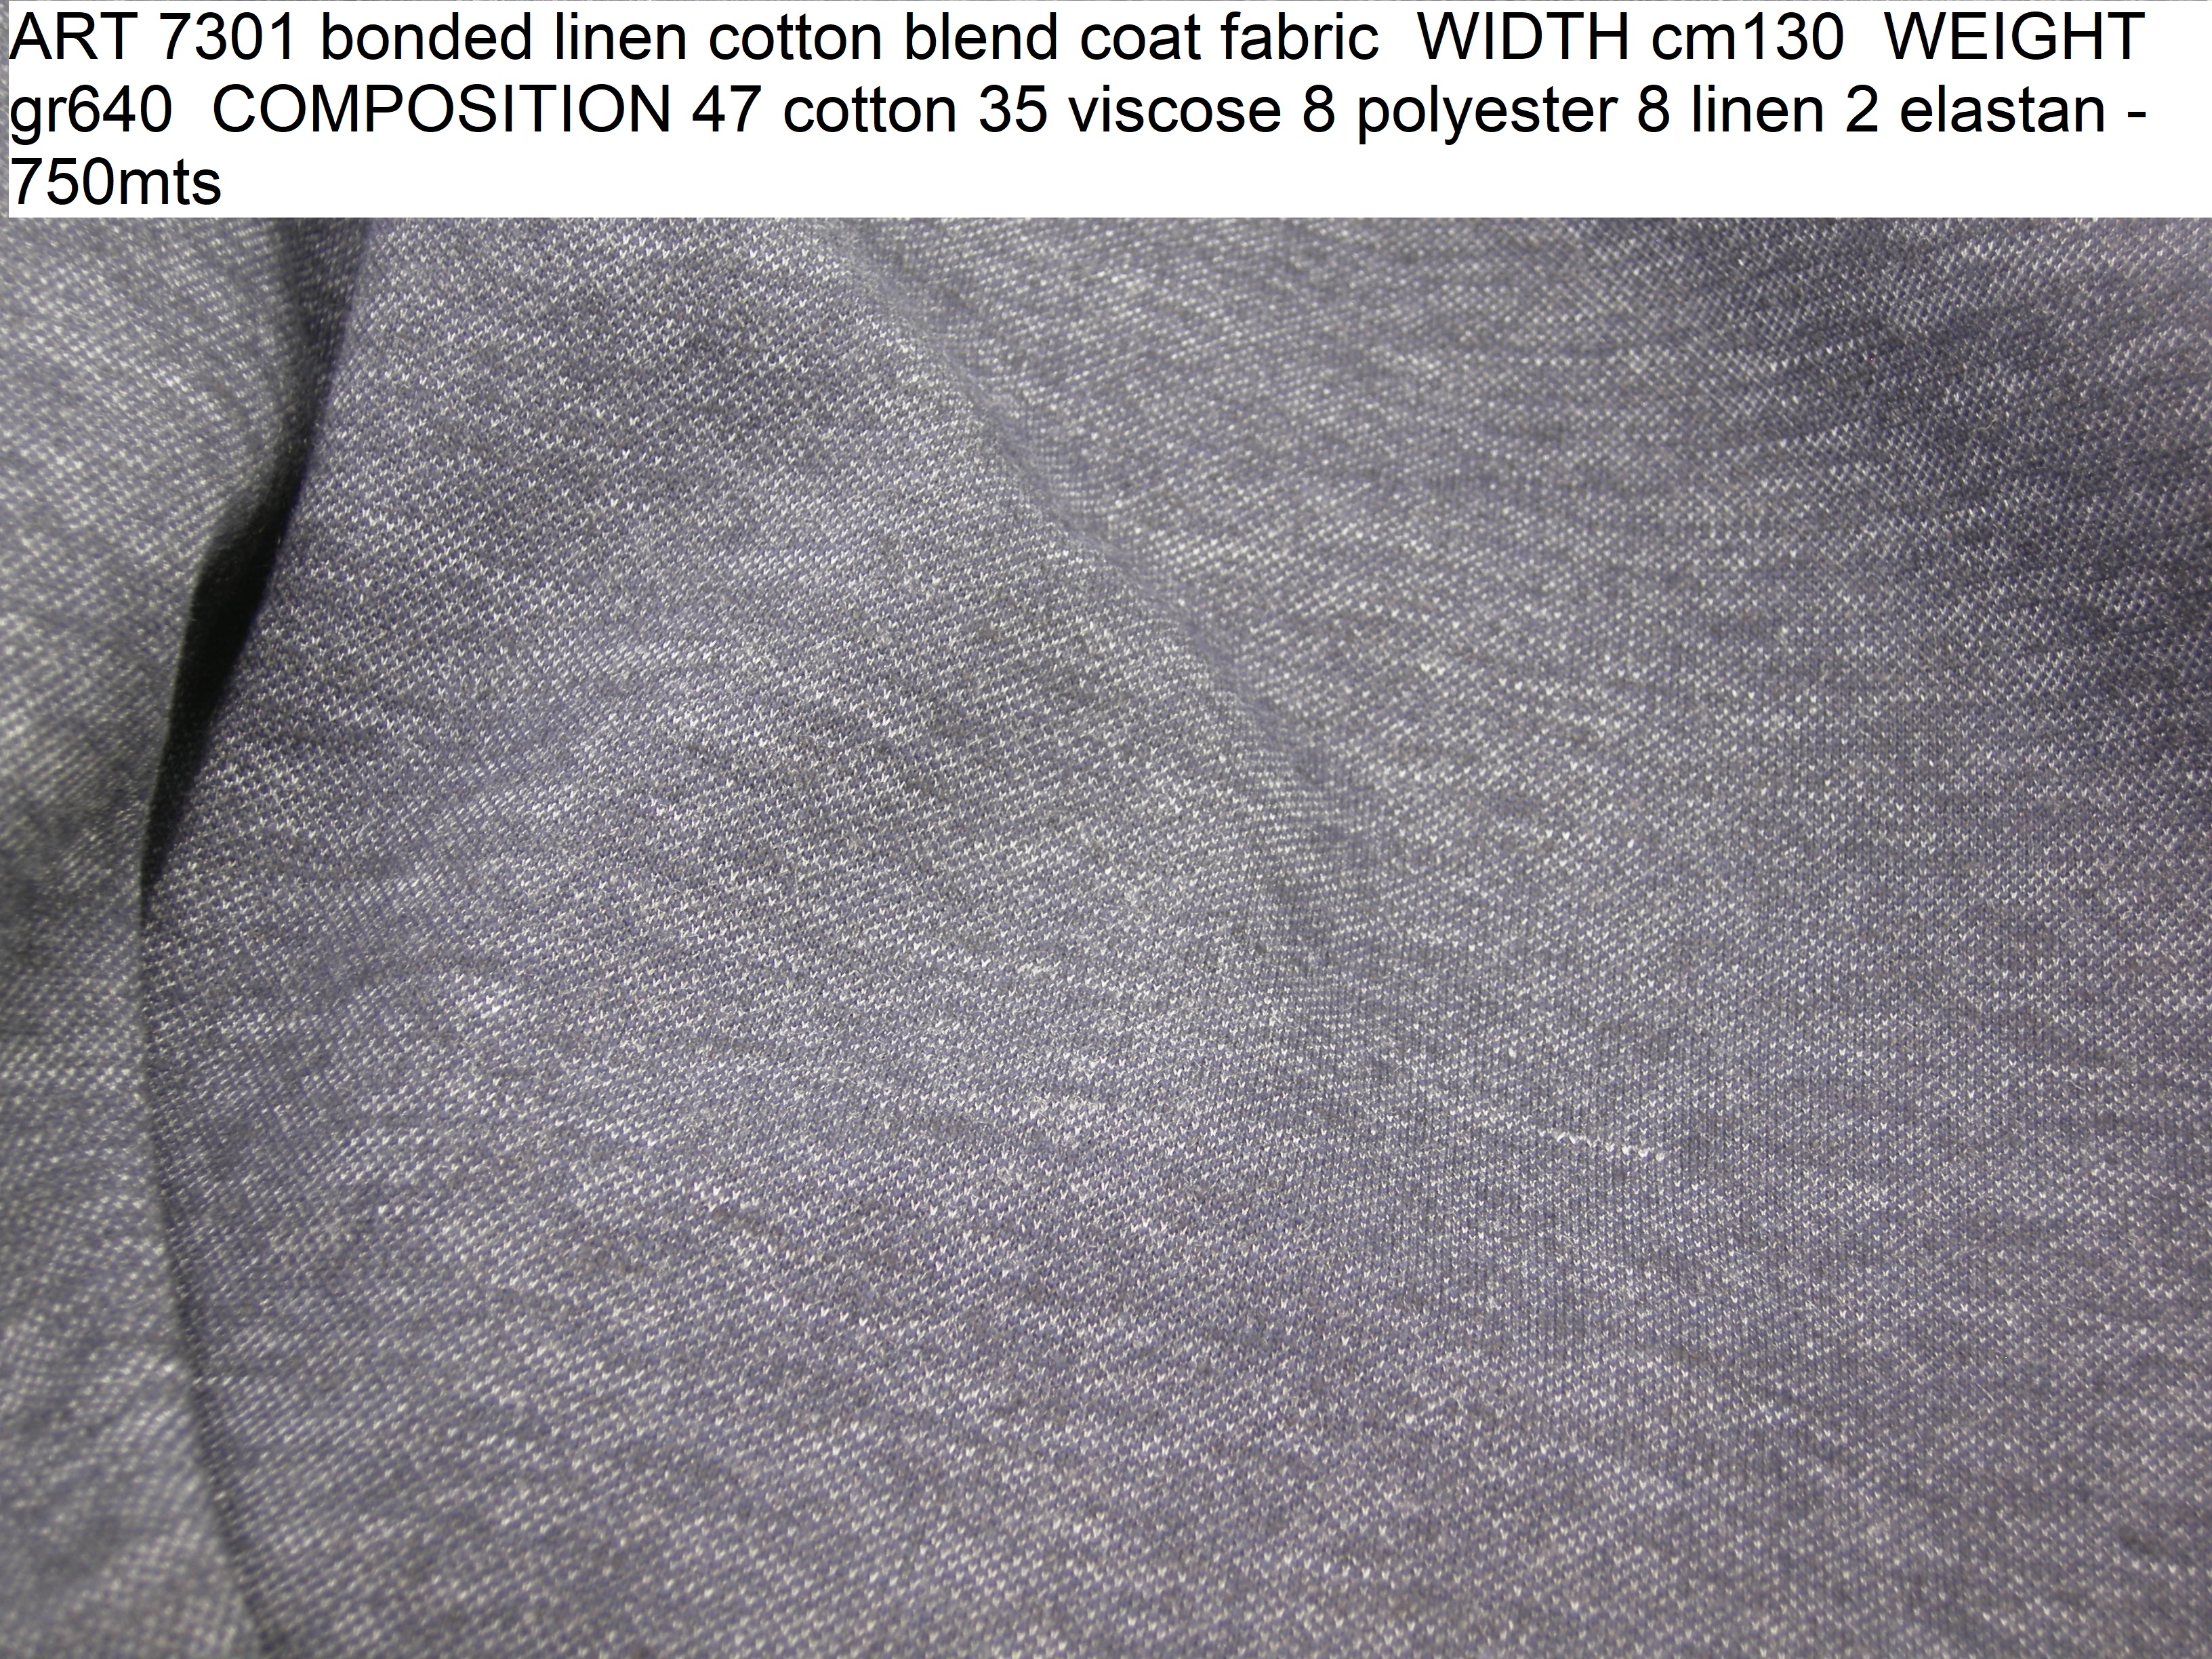 ART 7301 bonded linen cotton blend coat fabric WIDTH cm130 WEIGHT gr640 COMPOSITION 47 cotton 35 viscose 8 polyester 8 linen 2 elastan - 750mts